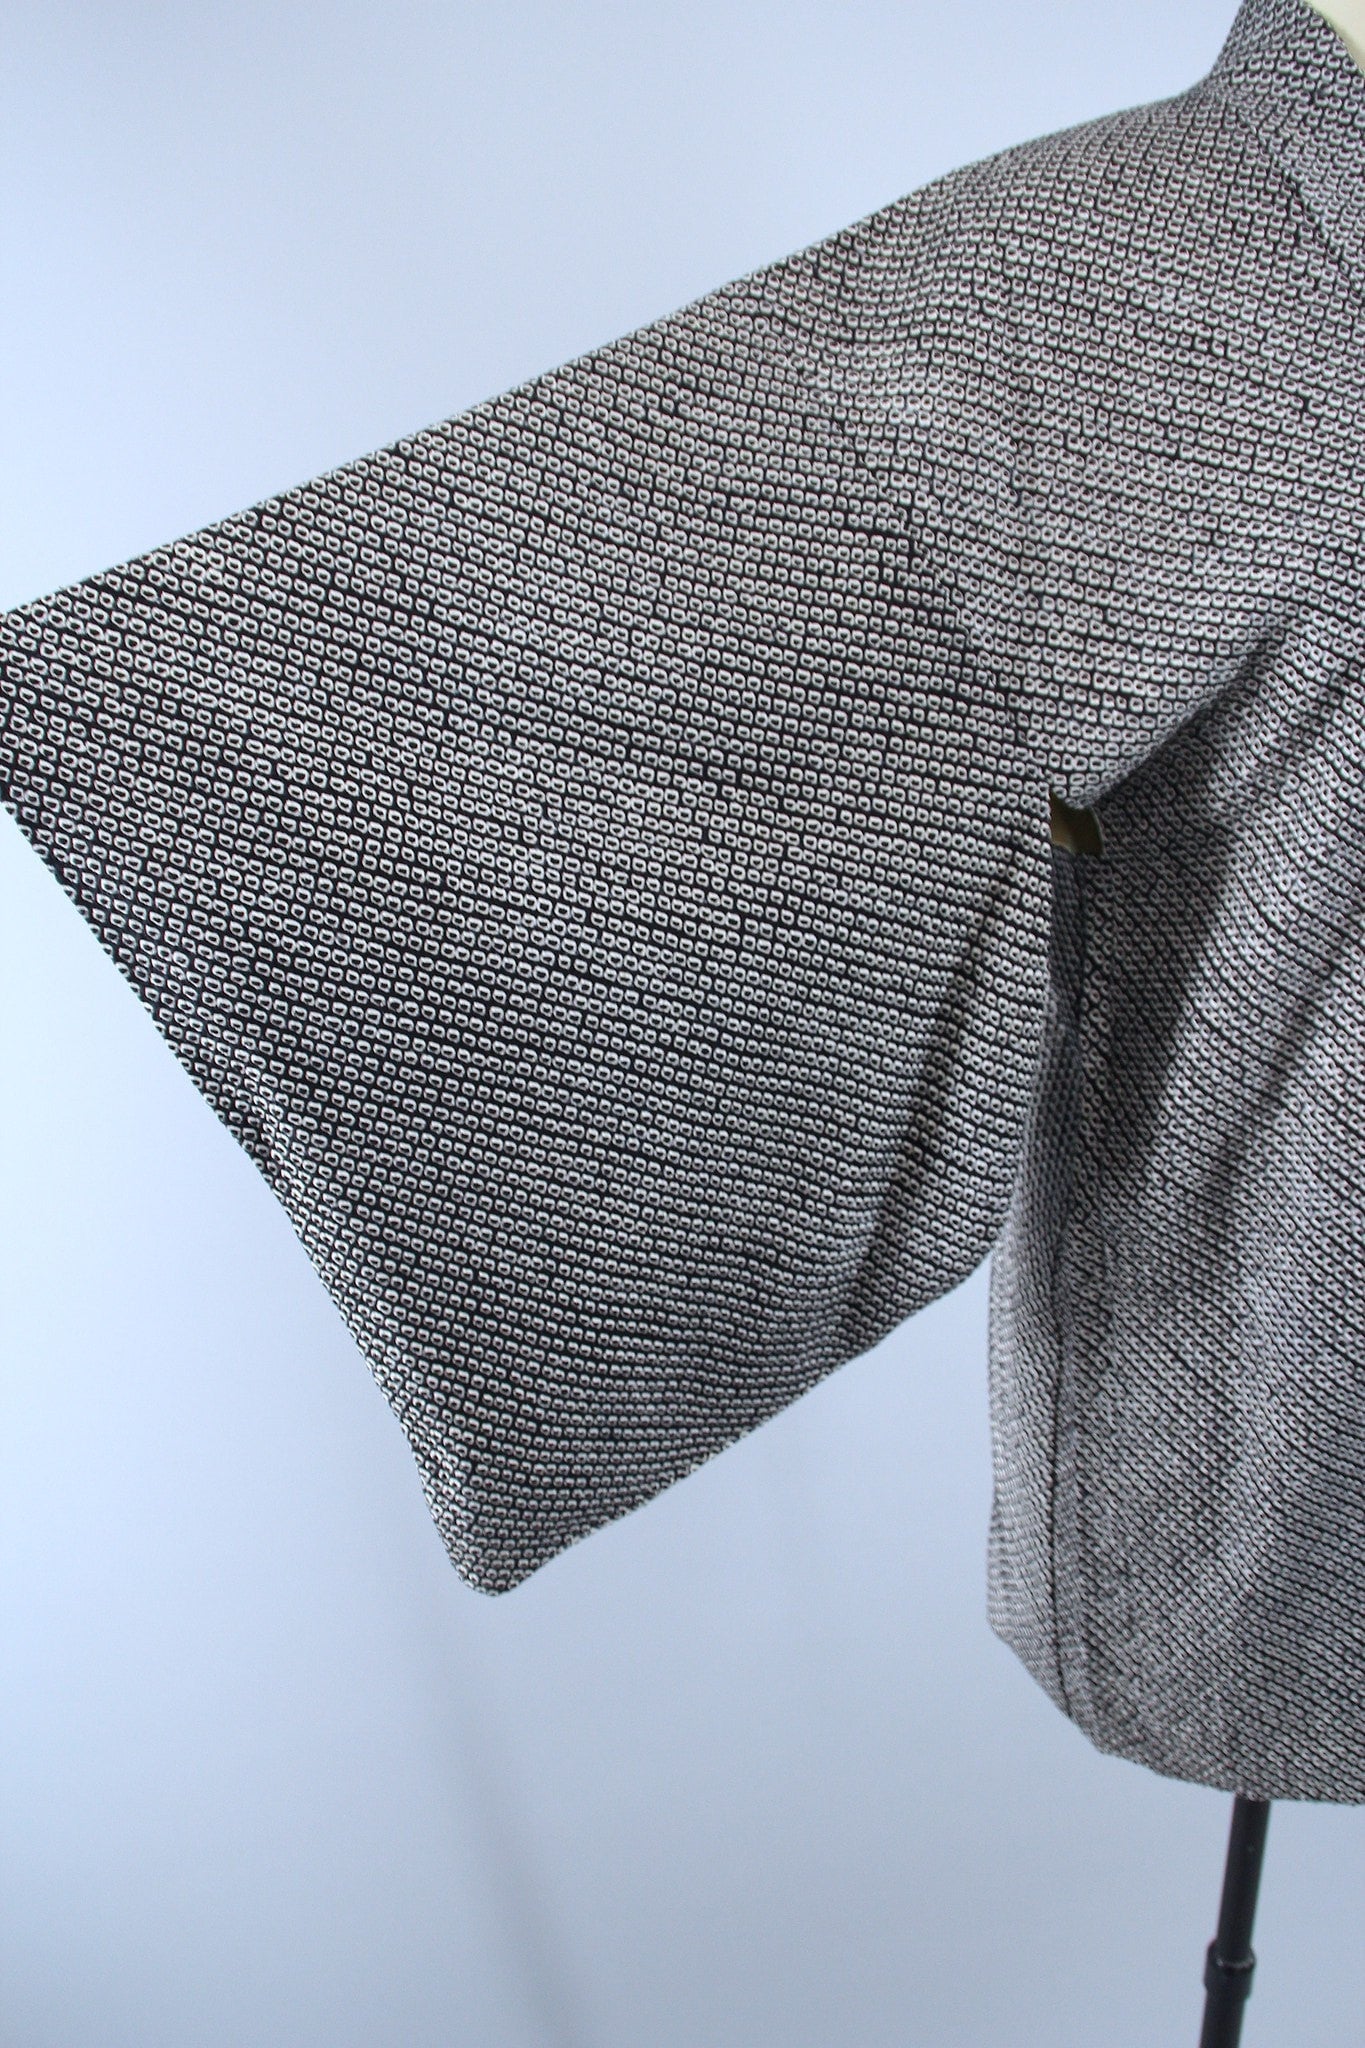 1960s Vintage Silk Haori Kimono Jacket Cardigan / Black & White Shibori Dyed - ThisBlueBird